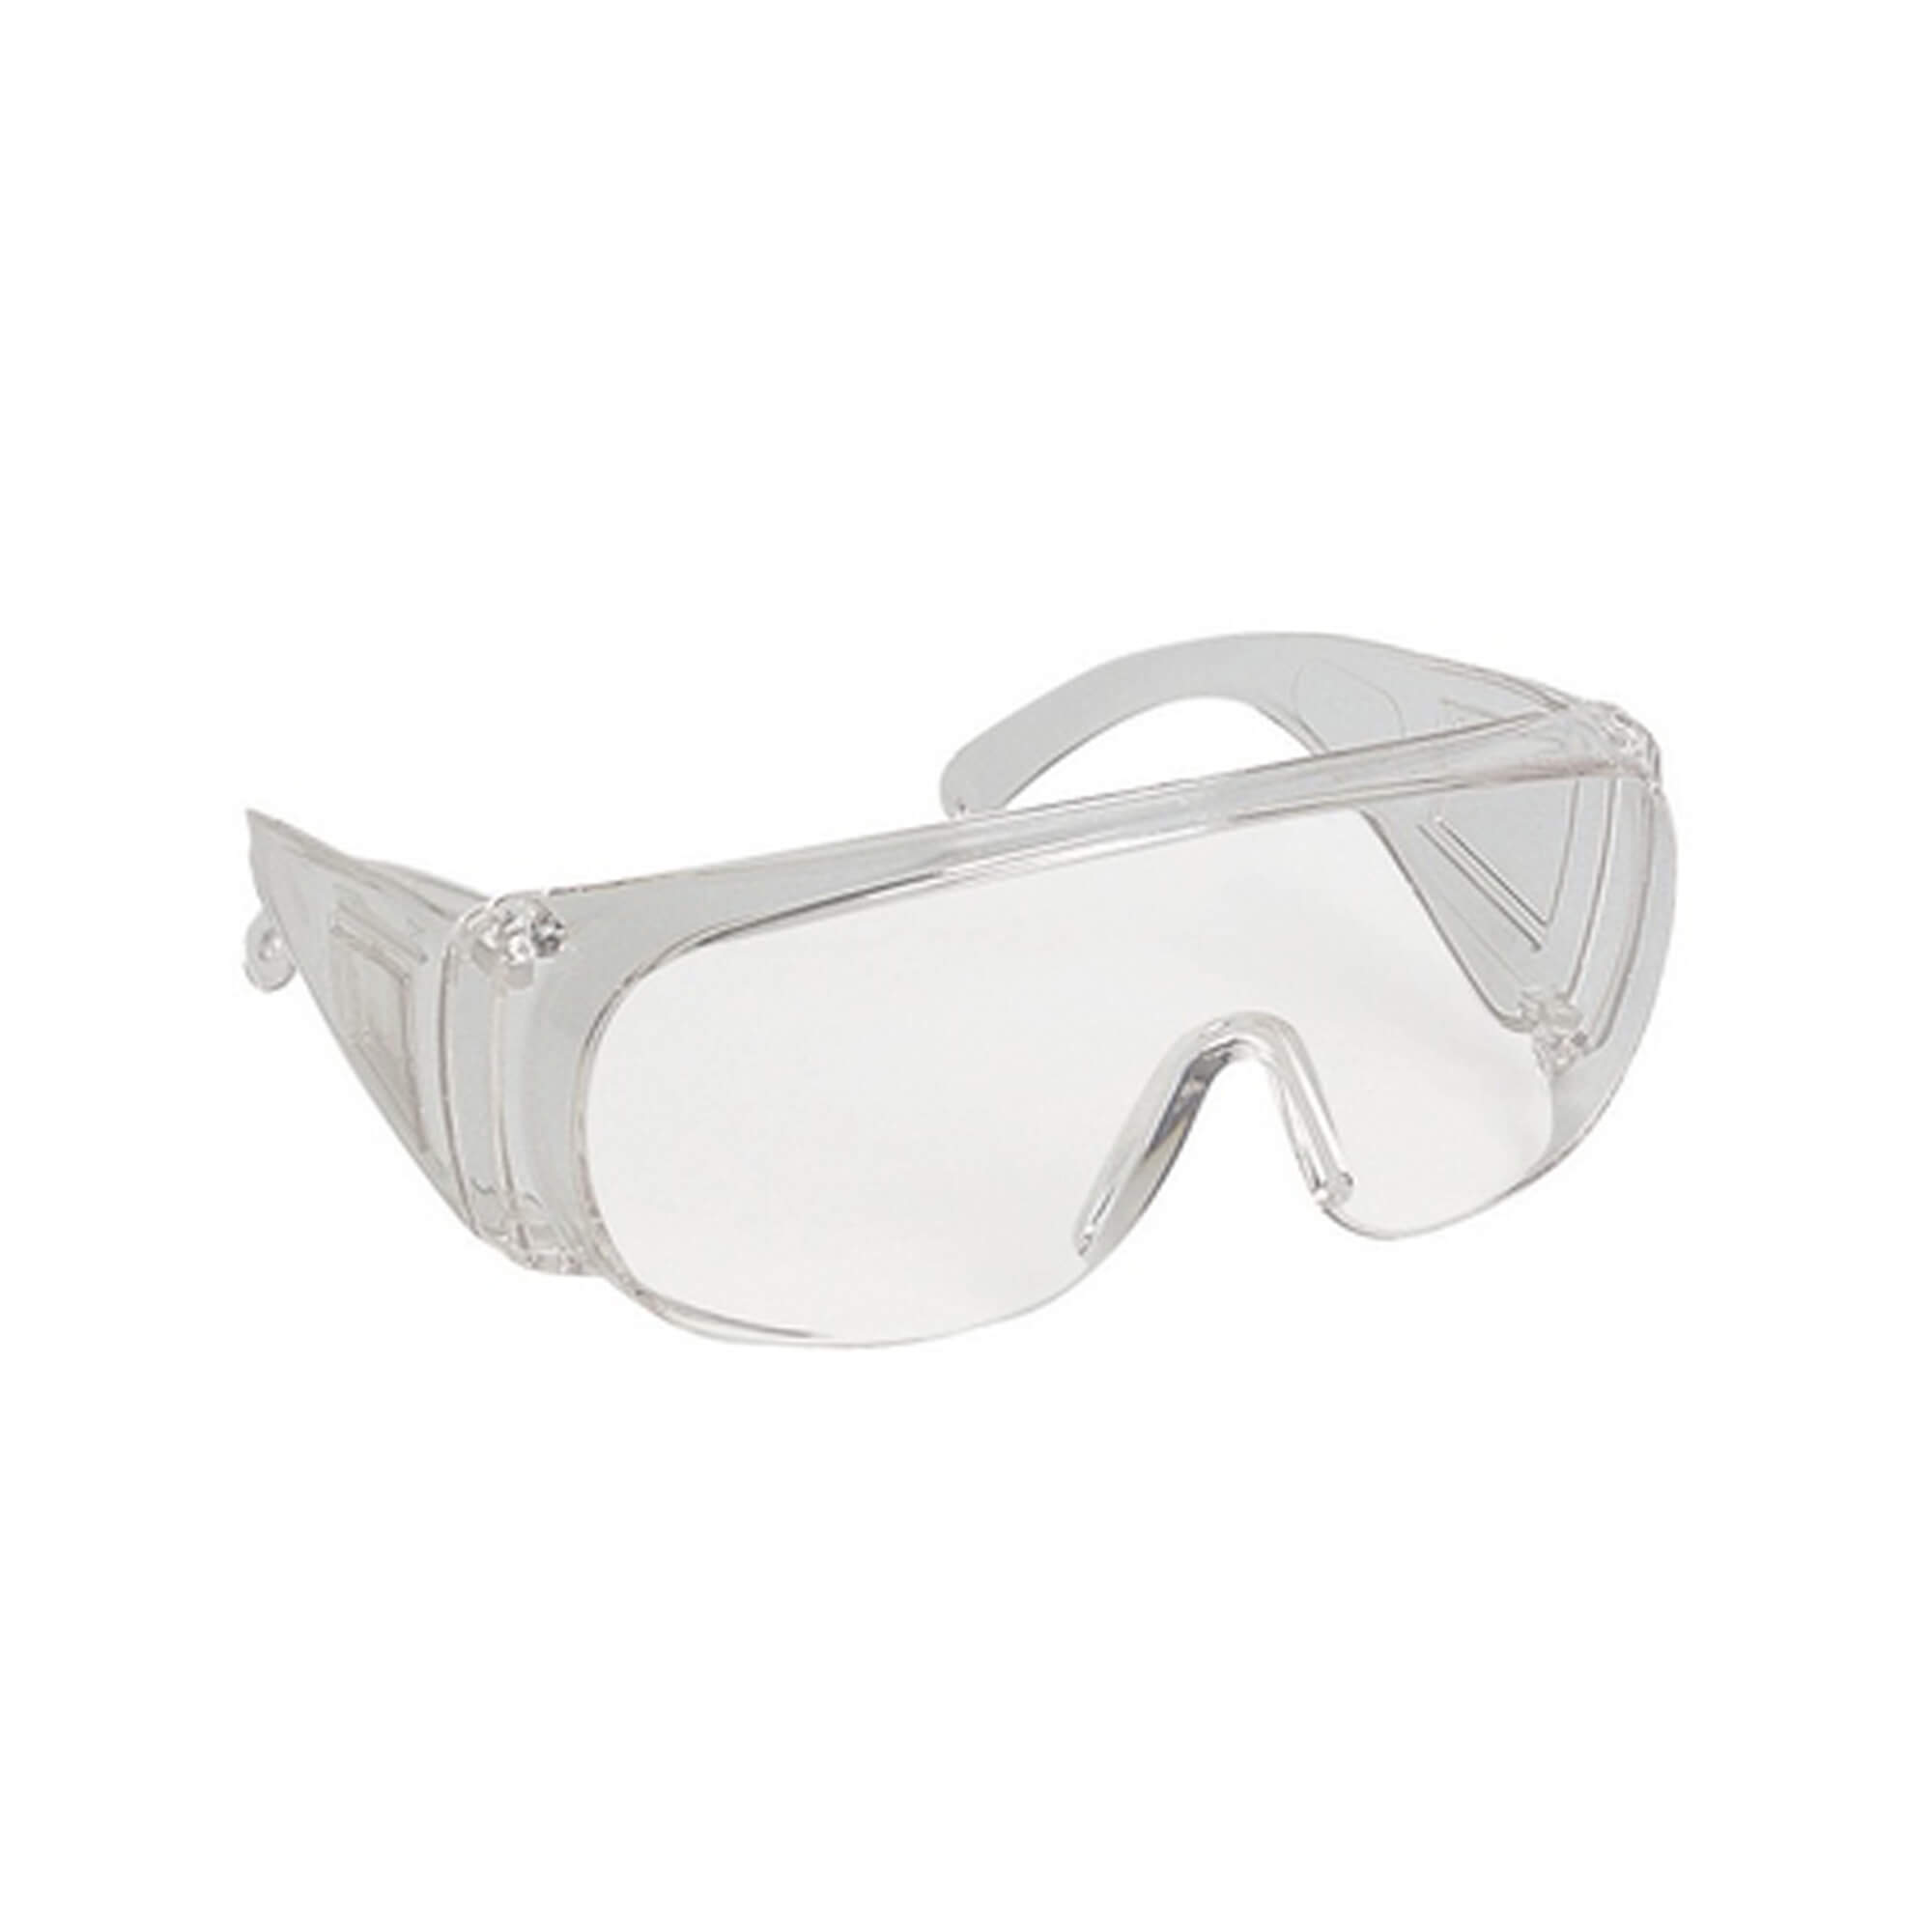 Pivolux safety glasses